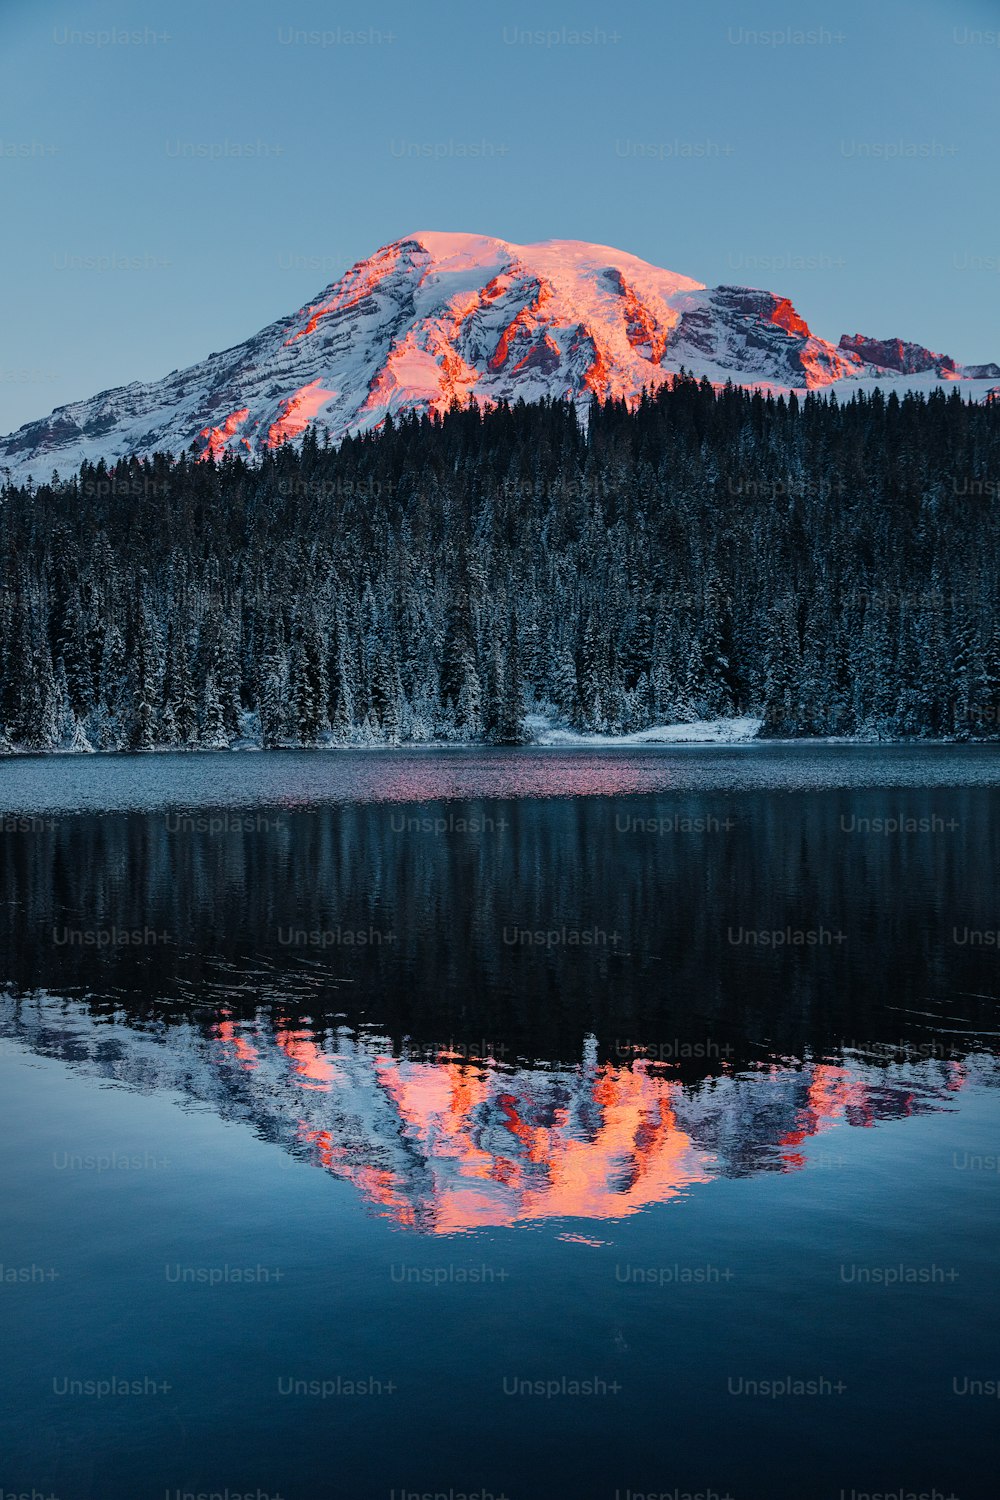 Ein Berg mit einem See davor wird gezeigt